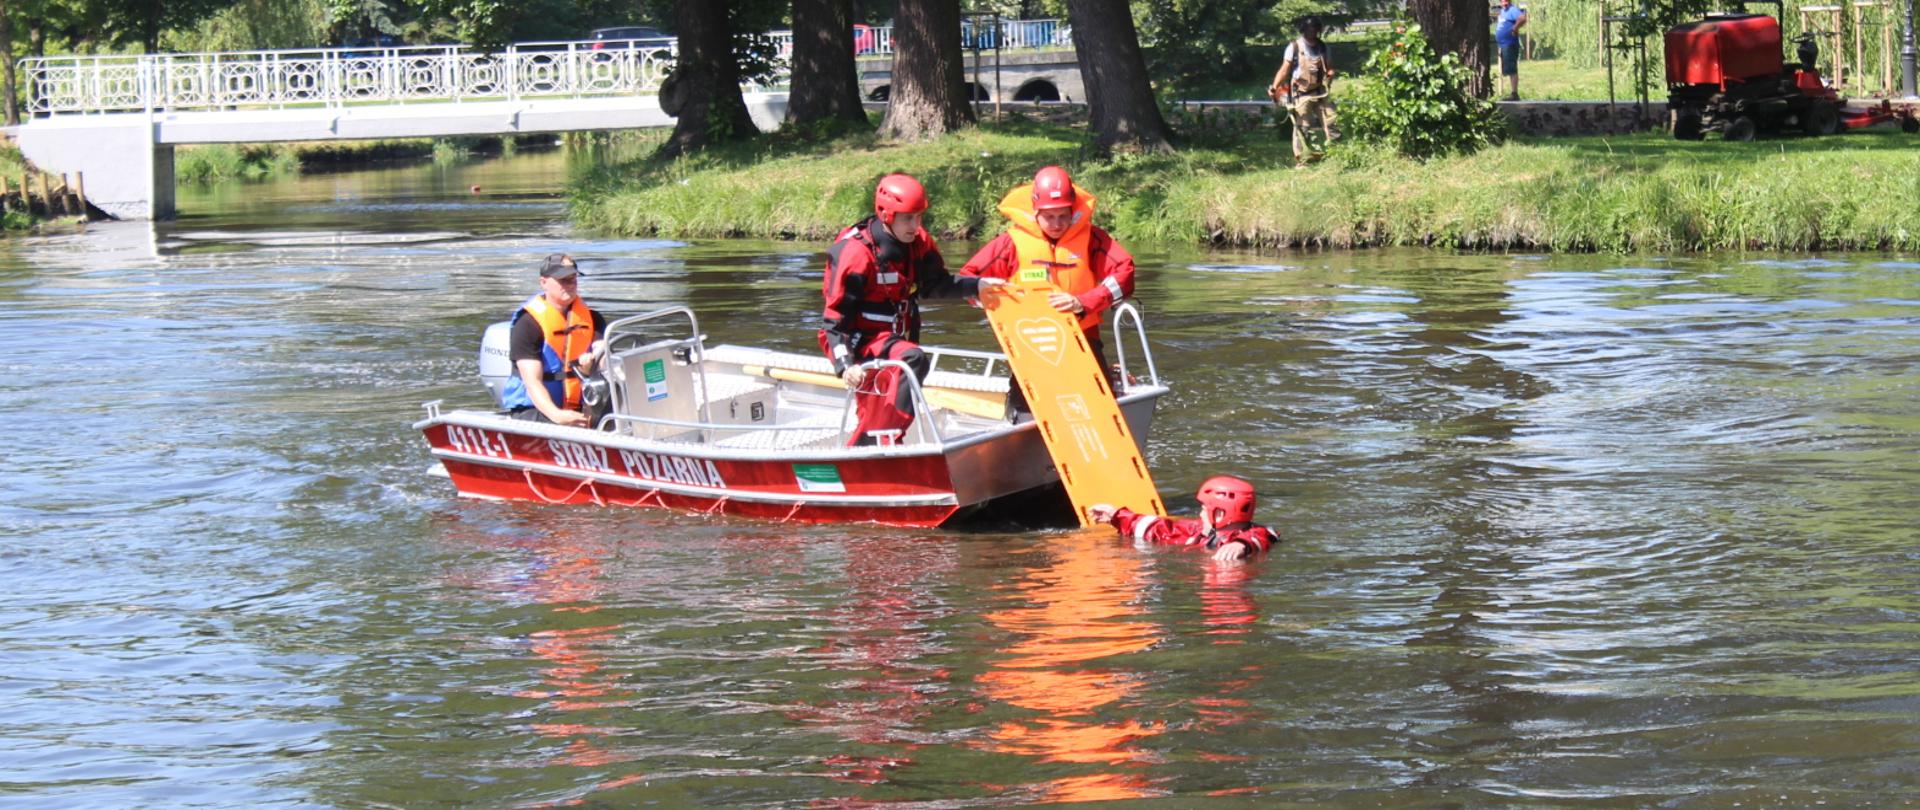 Zdjęcie przedstawia ratowników na łodzi motorowej podczas ratowania poszkodowanego z wody za pomocą deski ortopedycznej